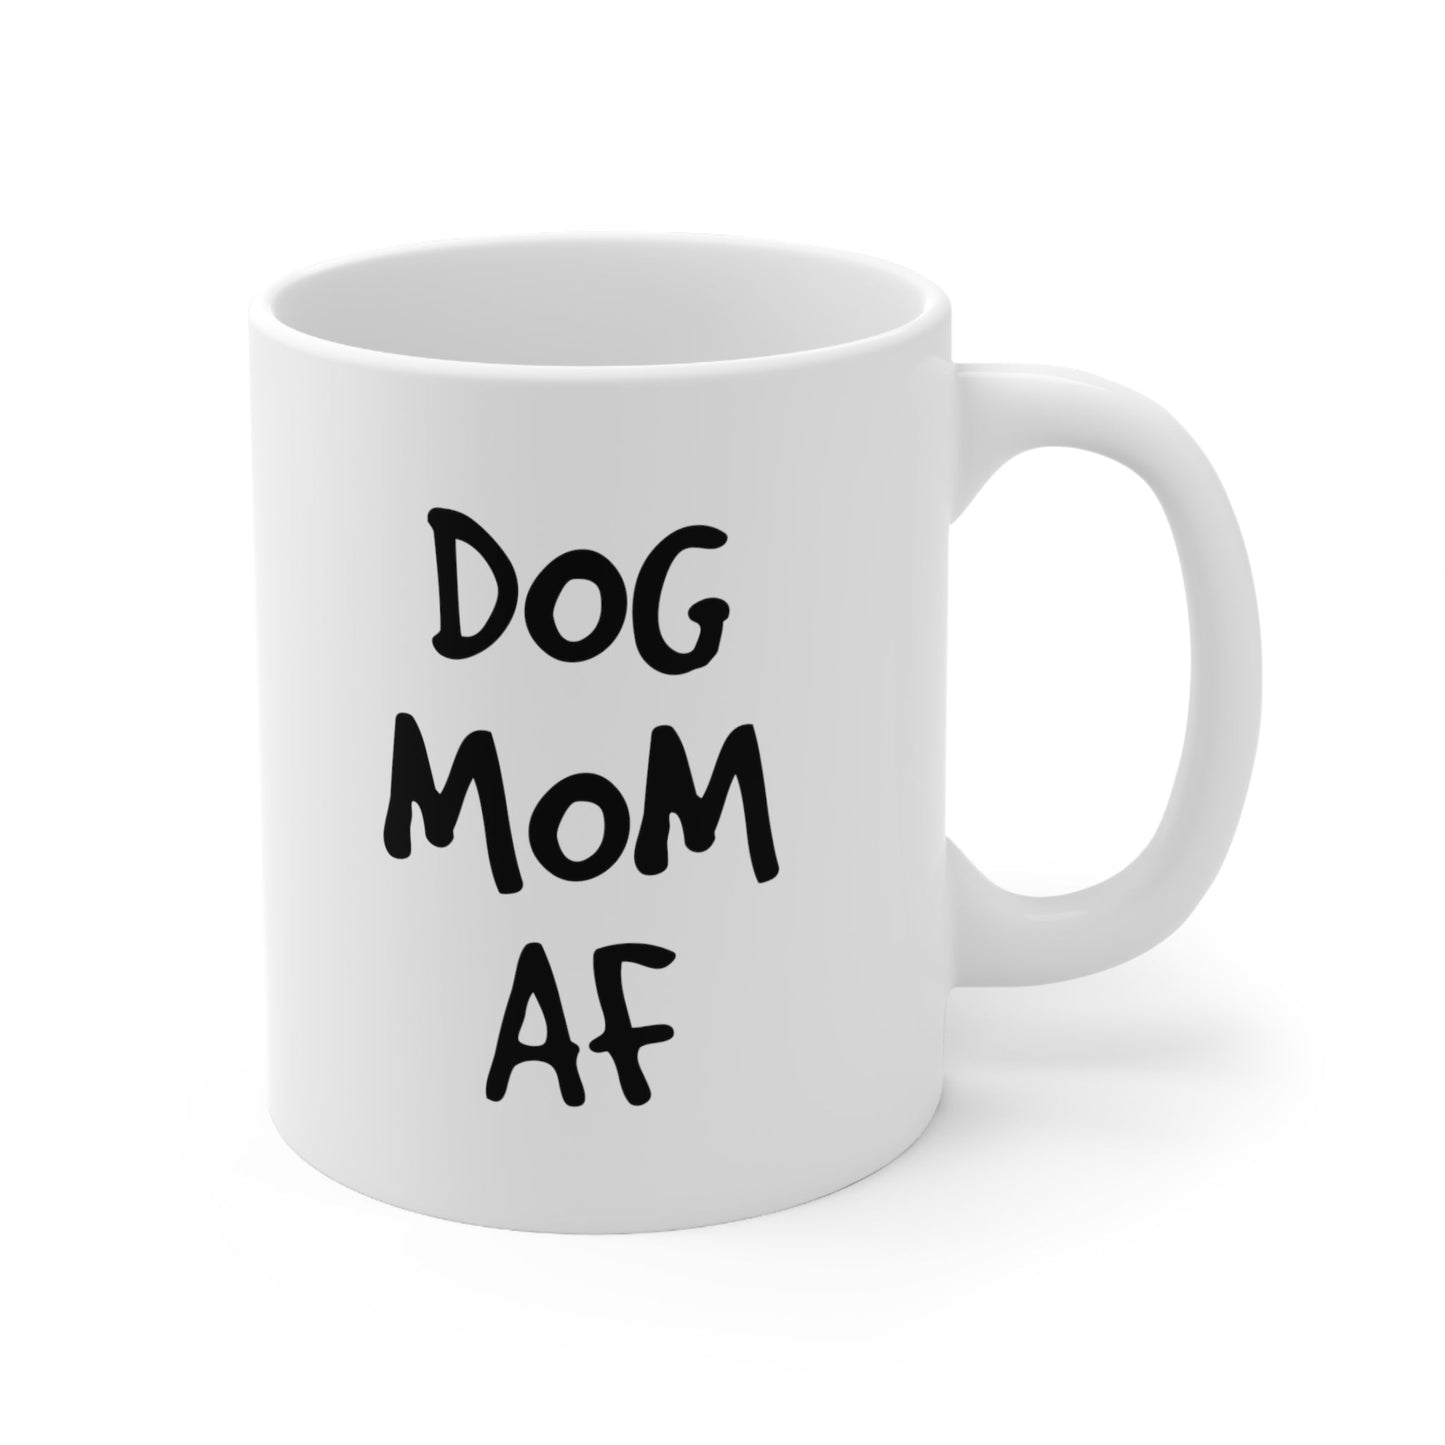 Dog Mom AF Coffee Mug 11oz Jolly Mugs